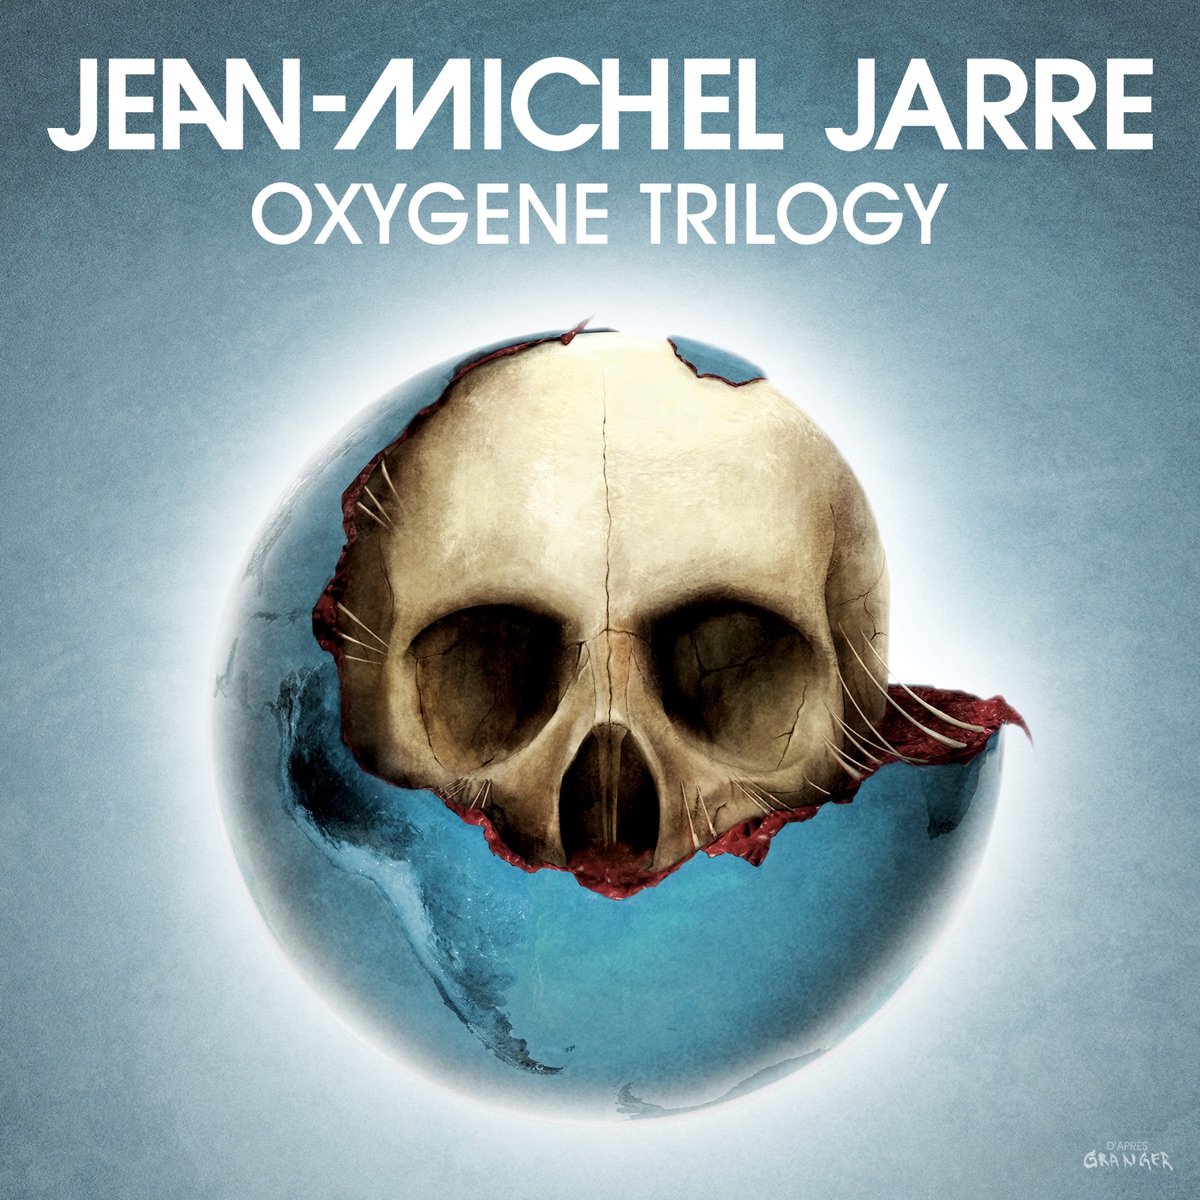 Oxygene 3 - Album by Jean-Michel Jarre - Apple Music